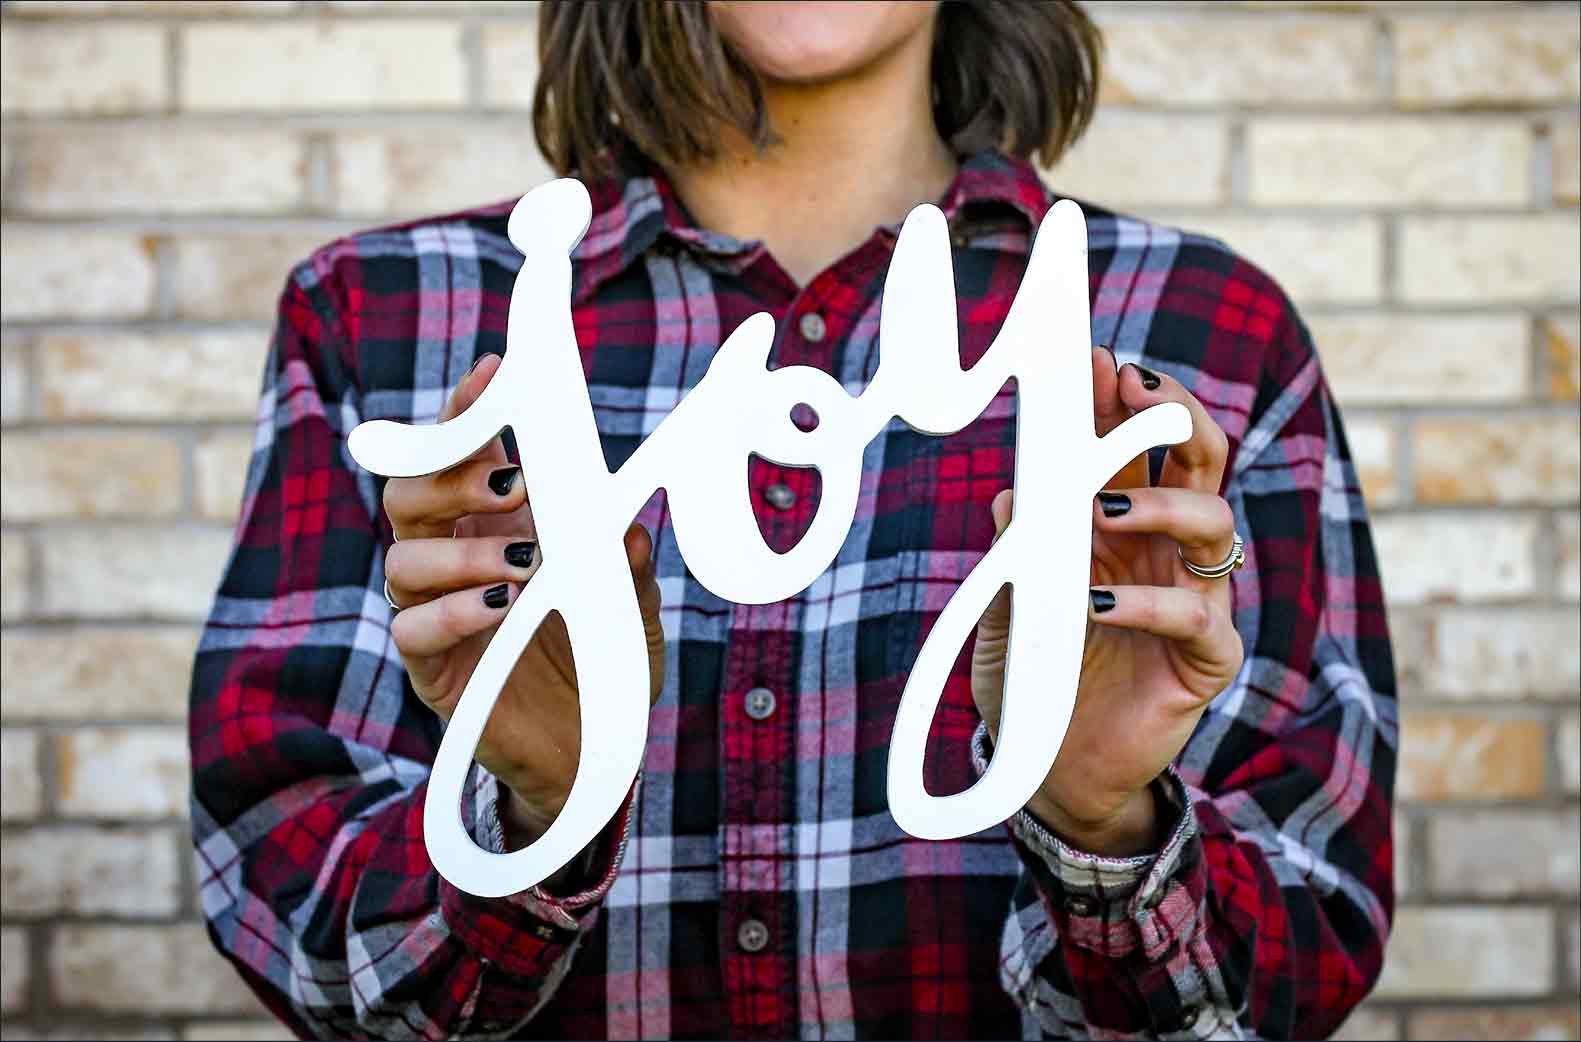 140: Make a plan for joy